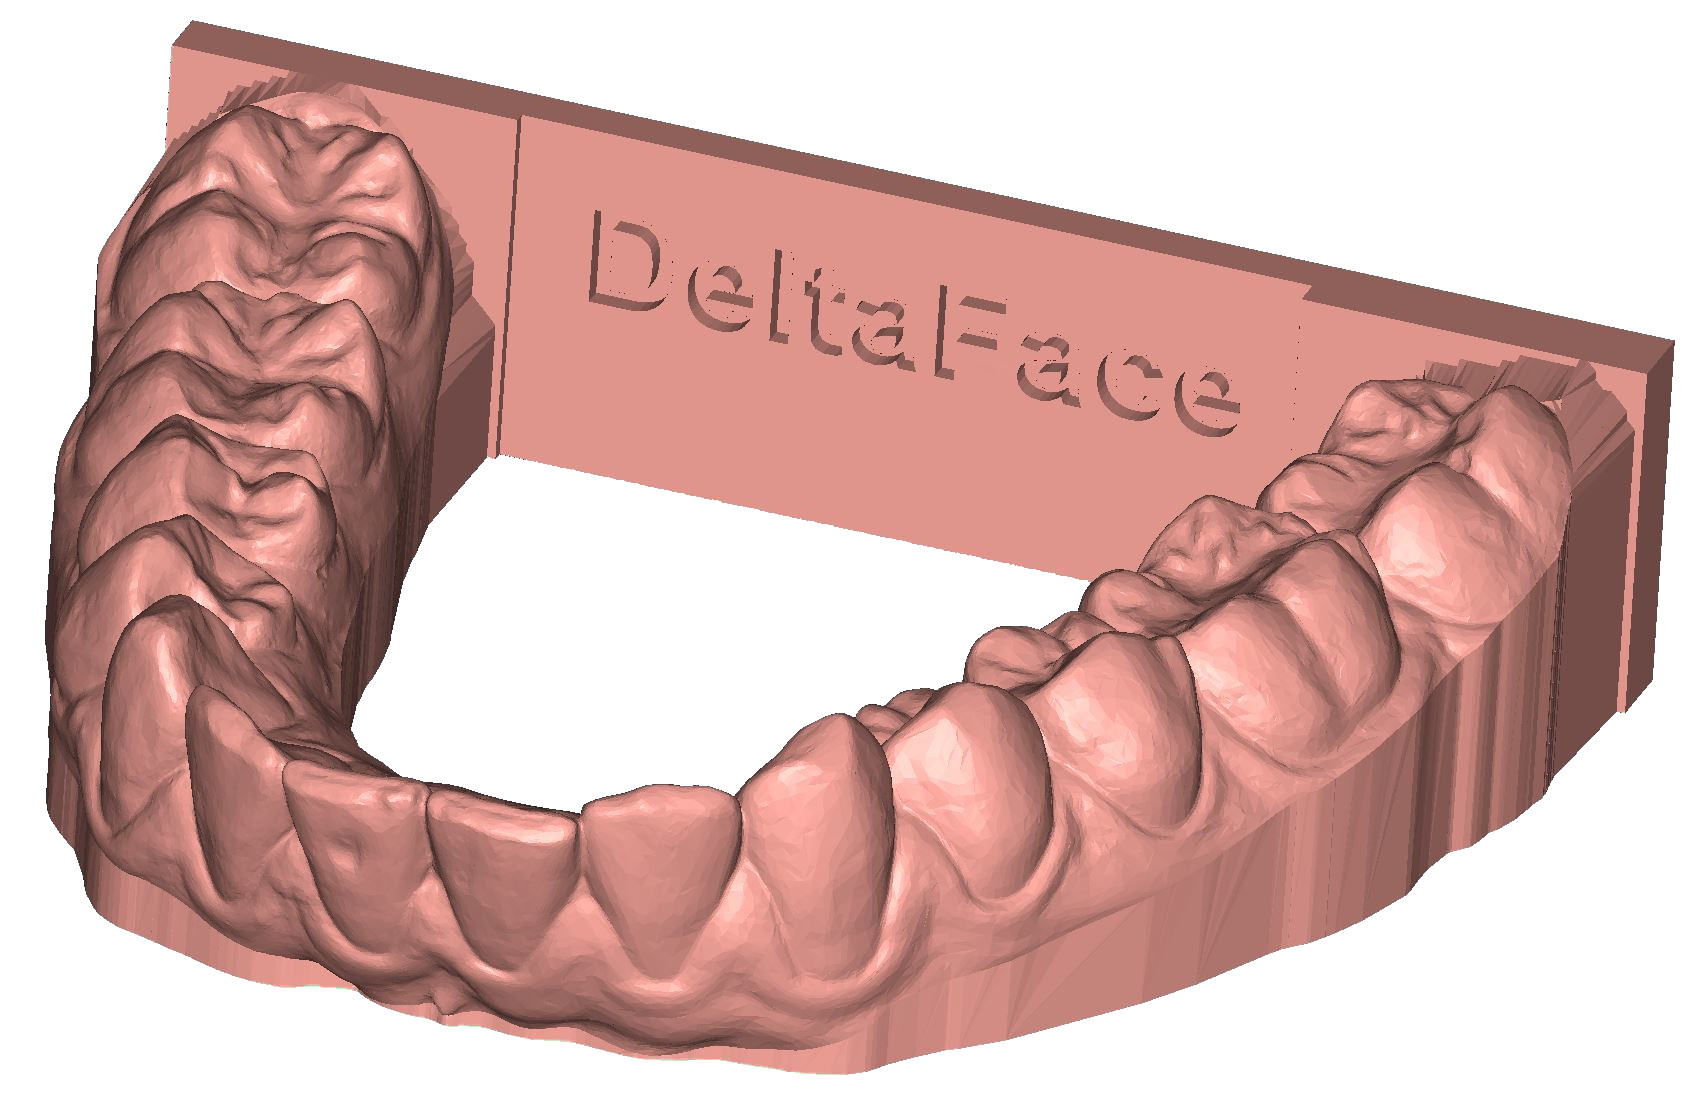 ArchBase base back plate 3D dental model DeltaFace